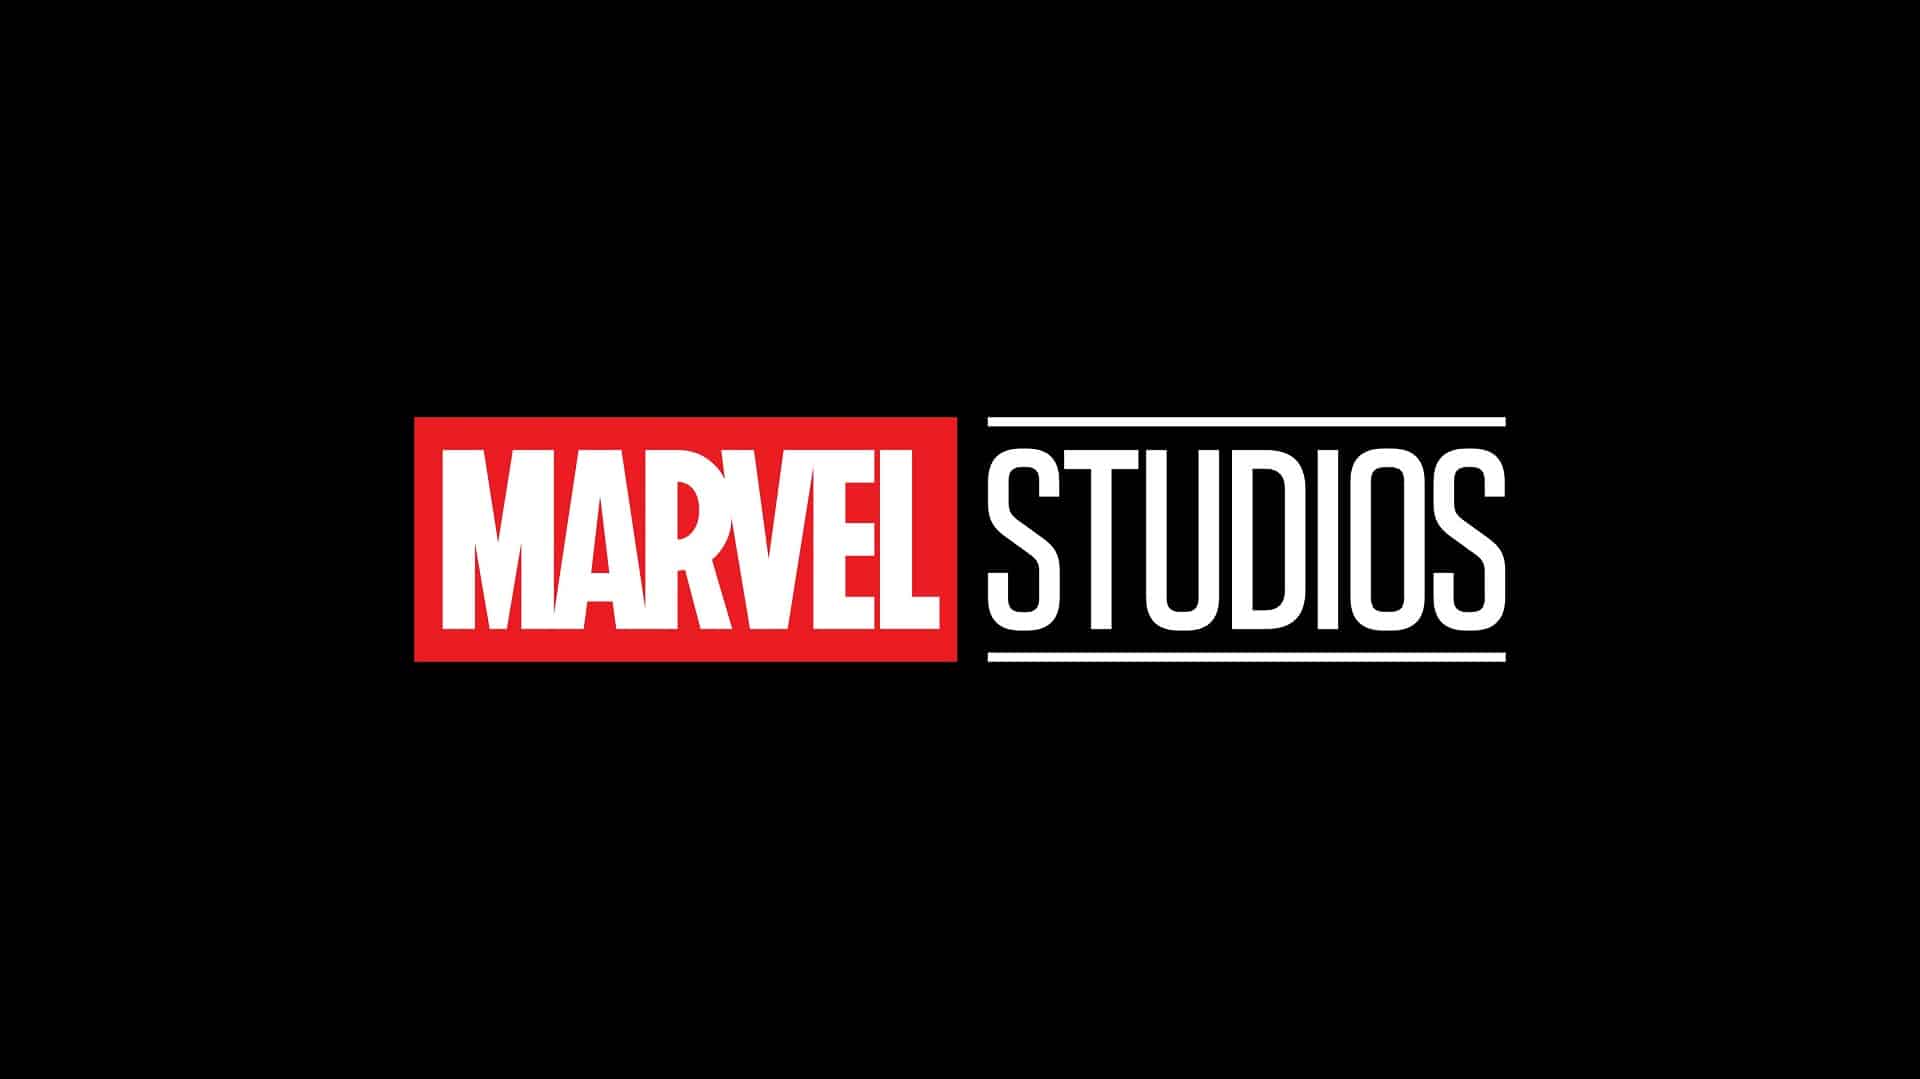 Citazioni dai film Marvel: creato un sito per trovarle tutte thumbnail